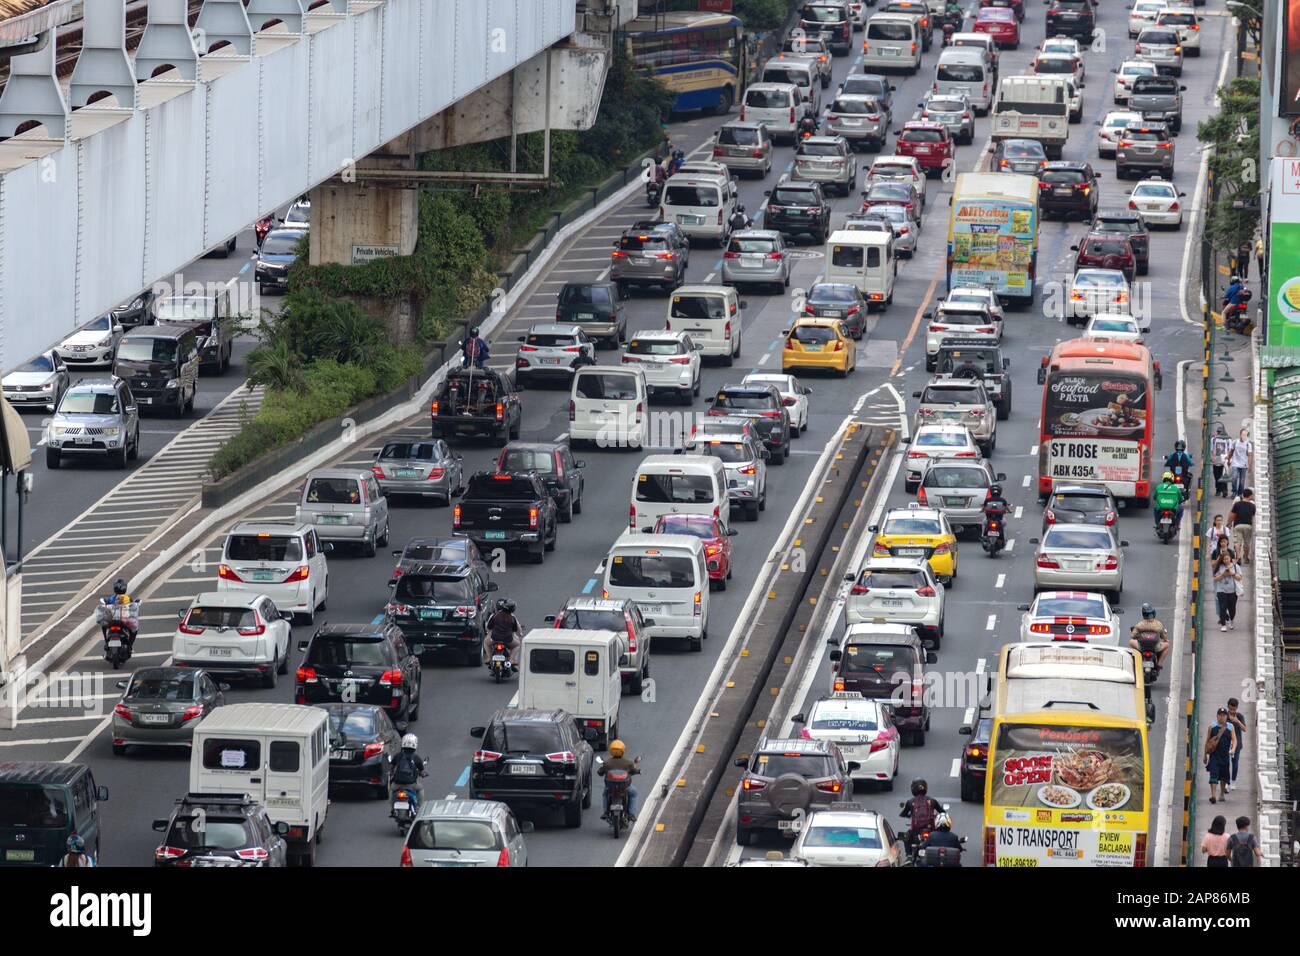 Manille, Philippines - 20 janvier 2020: Trafic lourd, de nombreuses voitures sur la route De L'Edsa en heure de pointe Banque D'Images